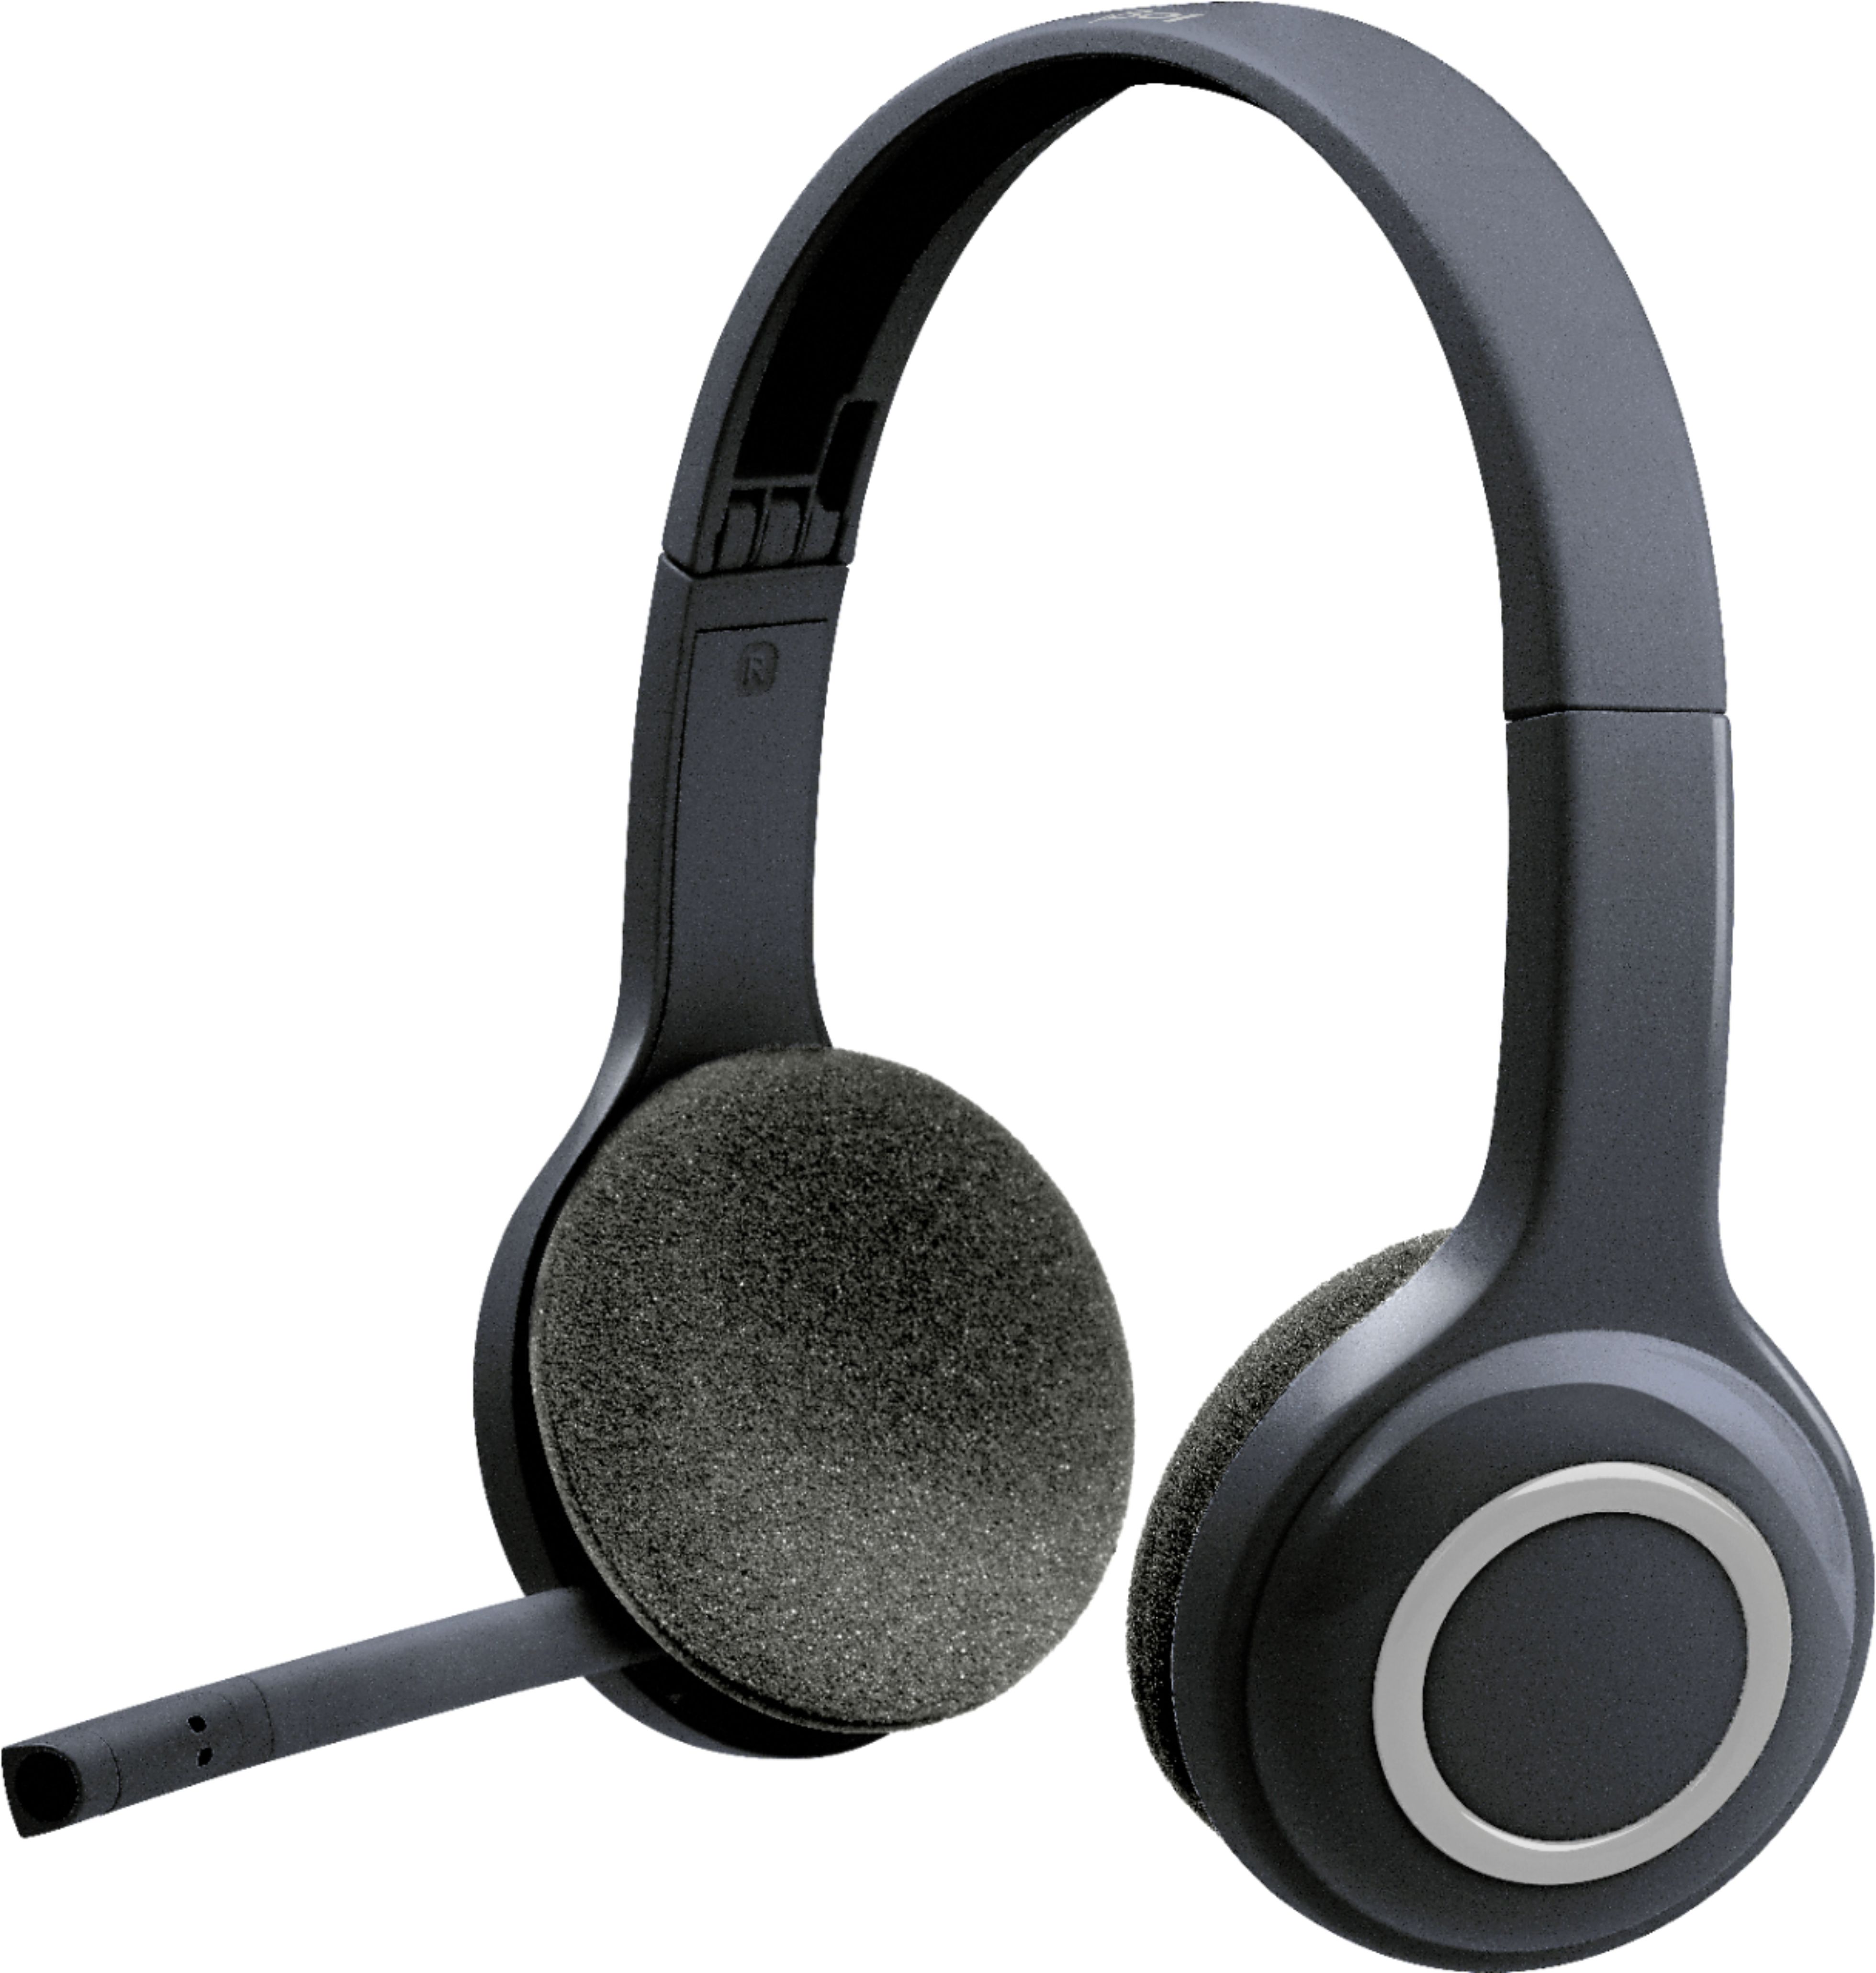 Oprecht Retoucheren via Best Buy: Logitech H600 RF Wireless On-Ear Headset Black 981-000341